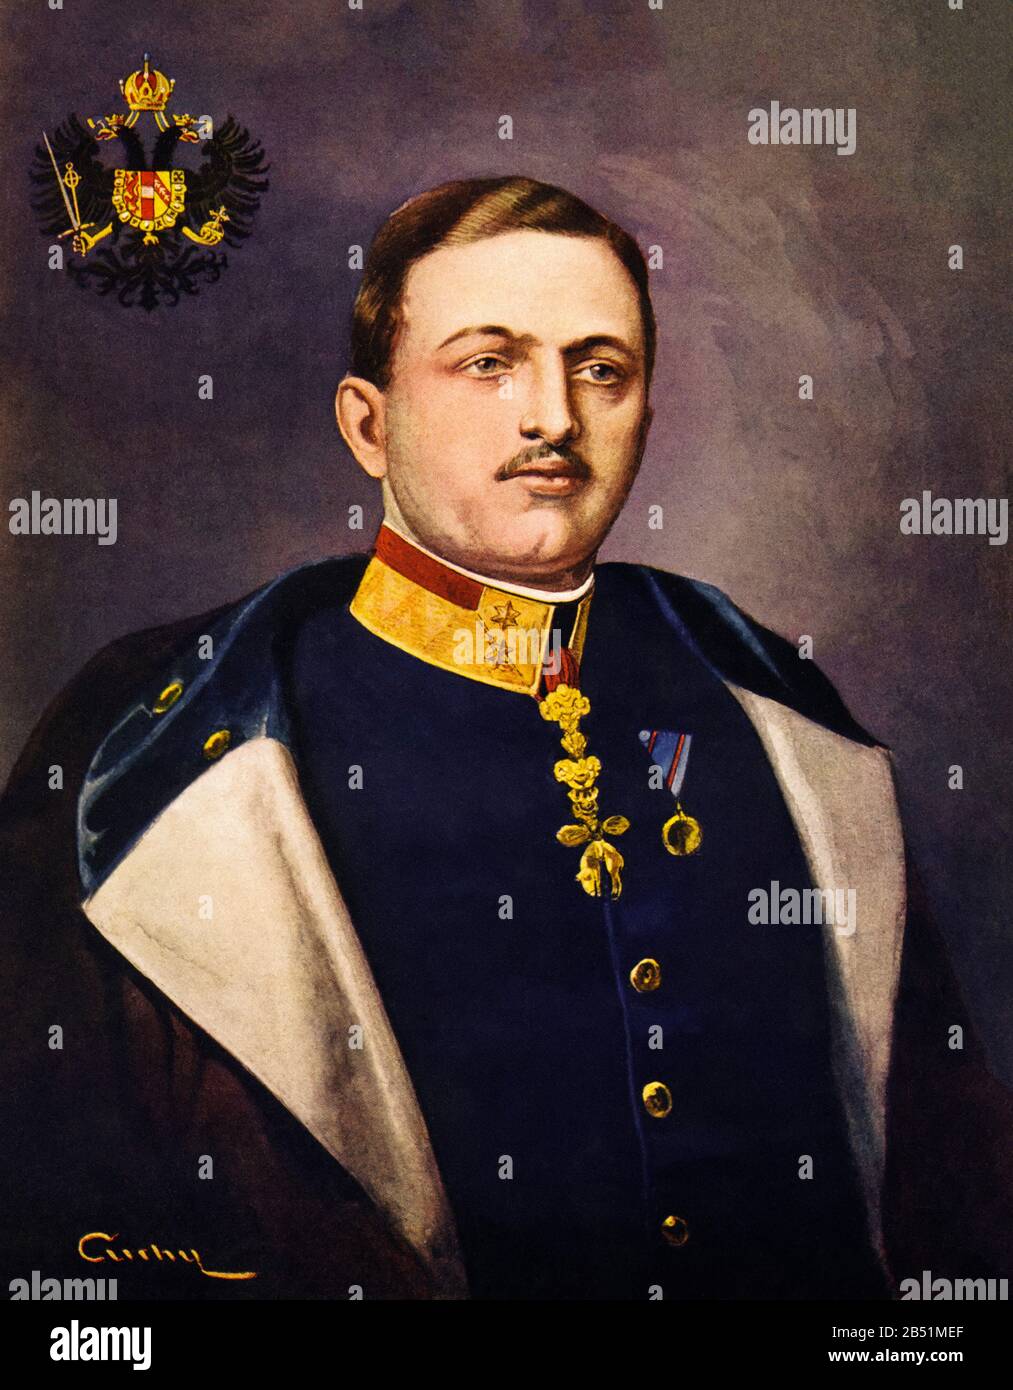 Ritratto a colori di Carlo d'Asburgo-Lorena e Sassonia. Karl Franz Josef Ludwig Hubert Georg Maria von Habsburg-Lothringen (1887 - 1922), era l'l Foto Stock